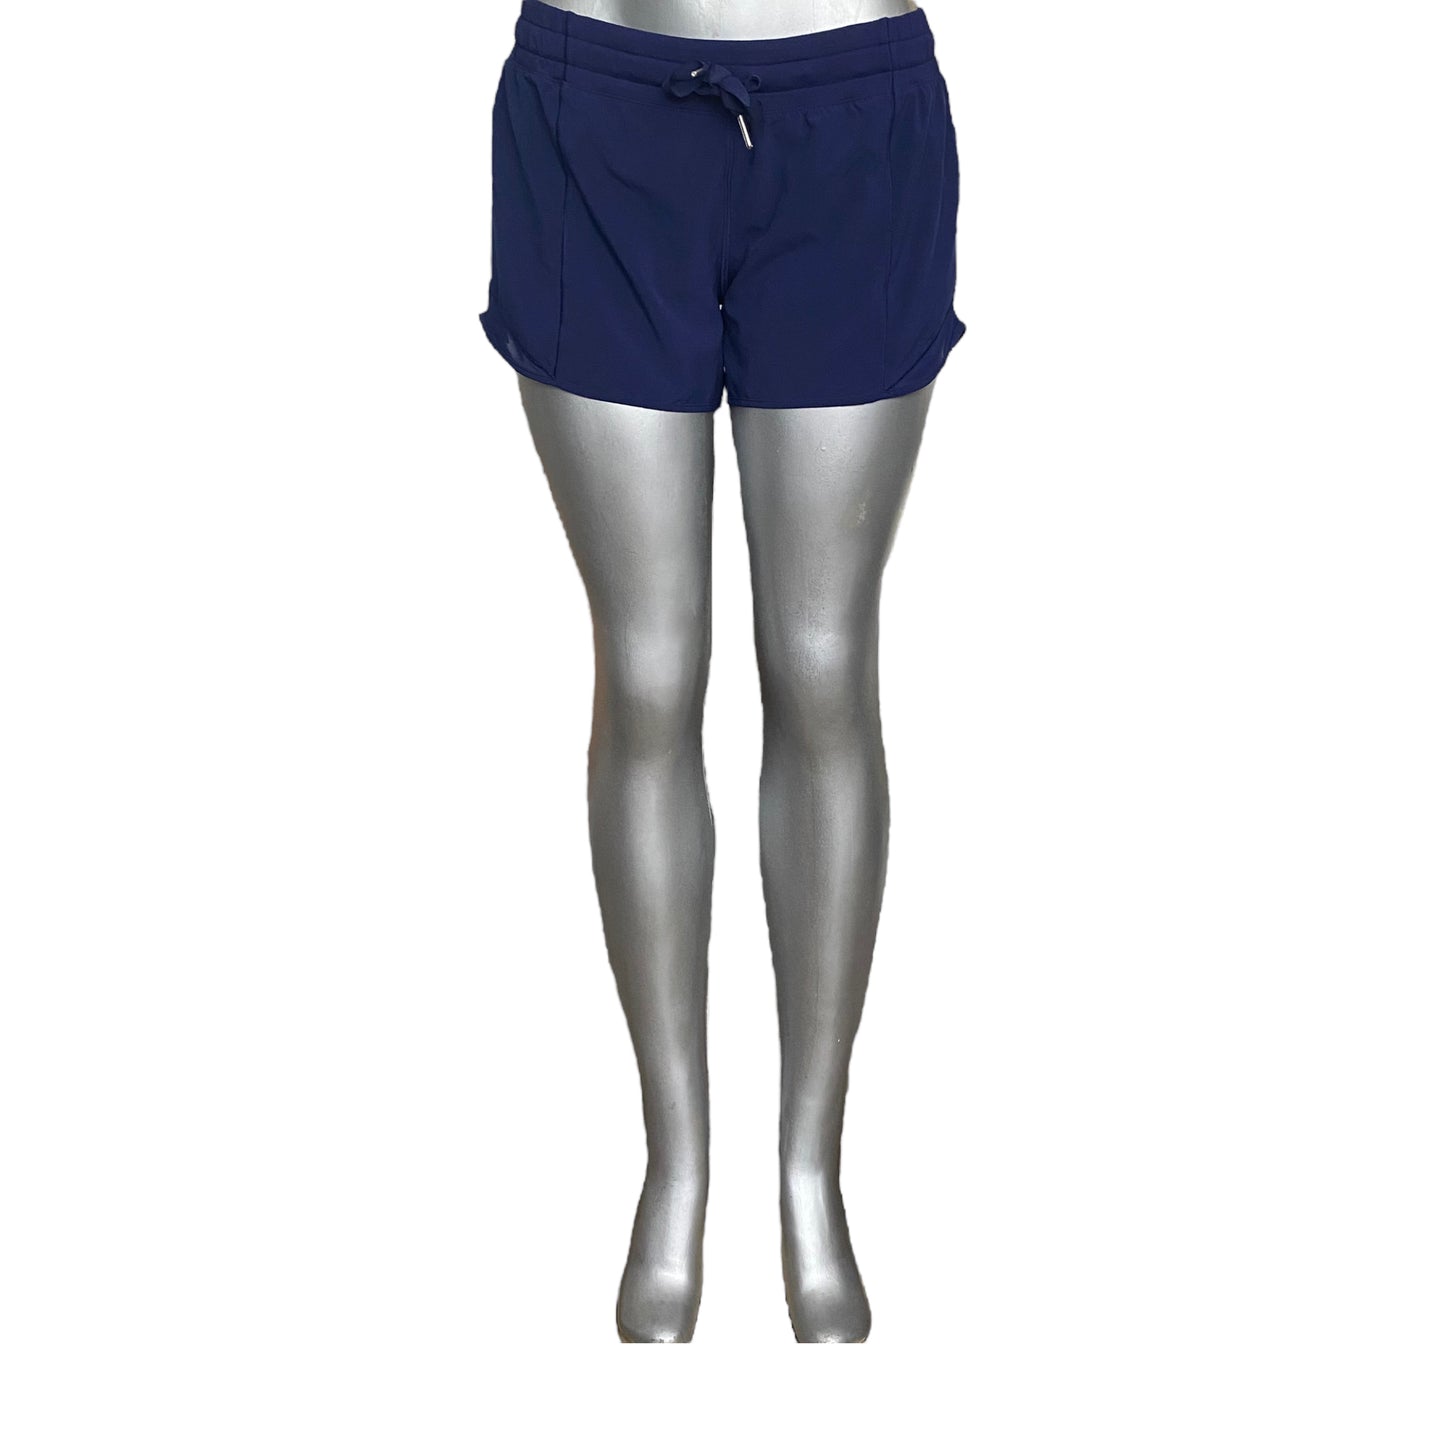 Lululemon Hotty Hot Shorts Navy Size 8